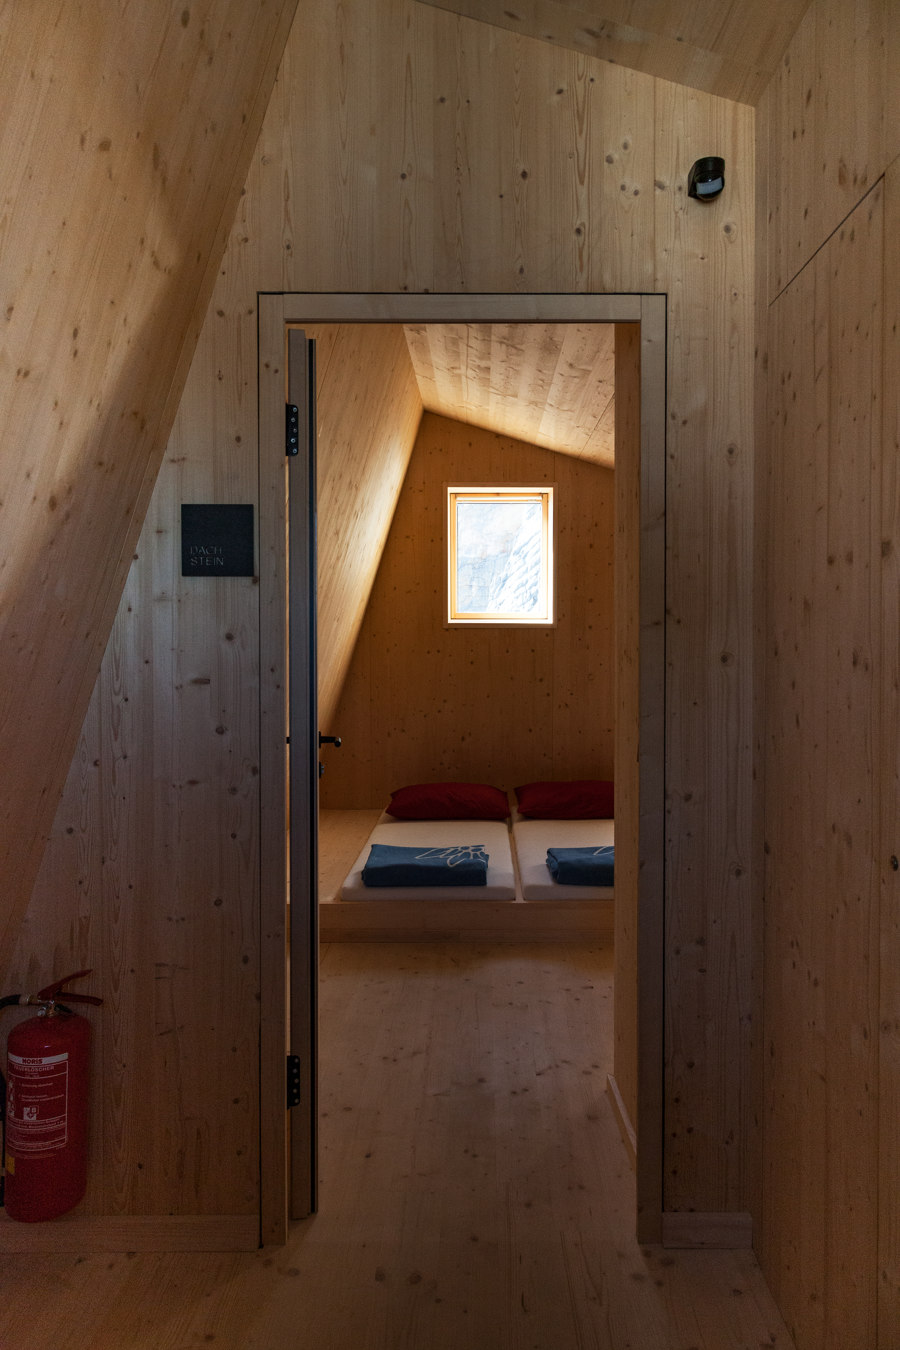 A BUILDING AS A ROCK Mountain Hut on Dachstein Glacier, Austria Title: Seetalerhütte de VELUX Group | Références des fabricantes